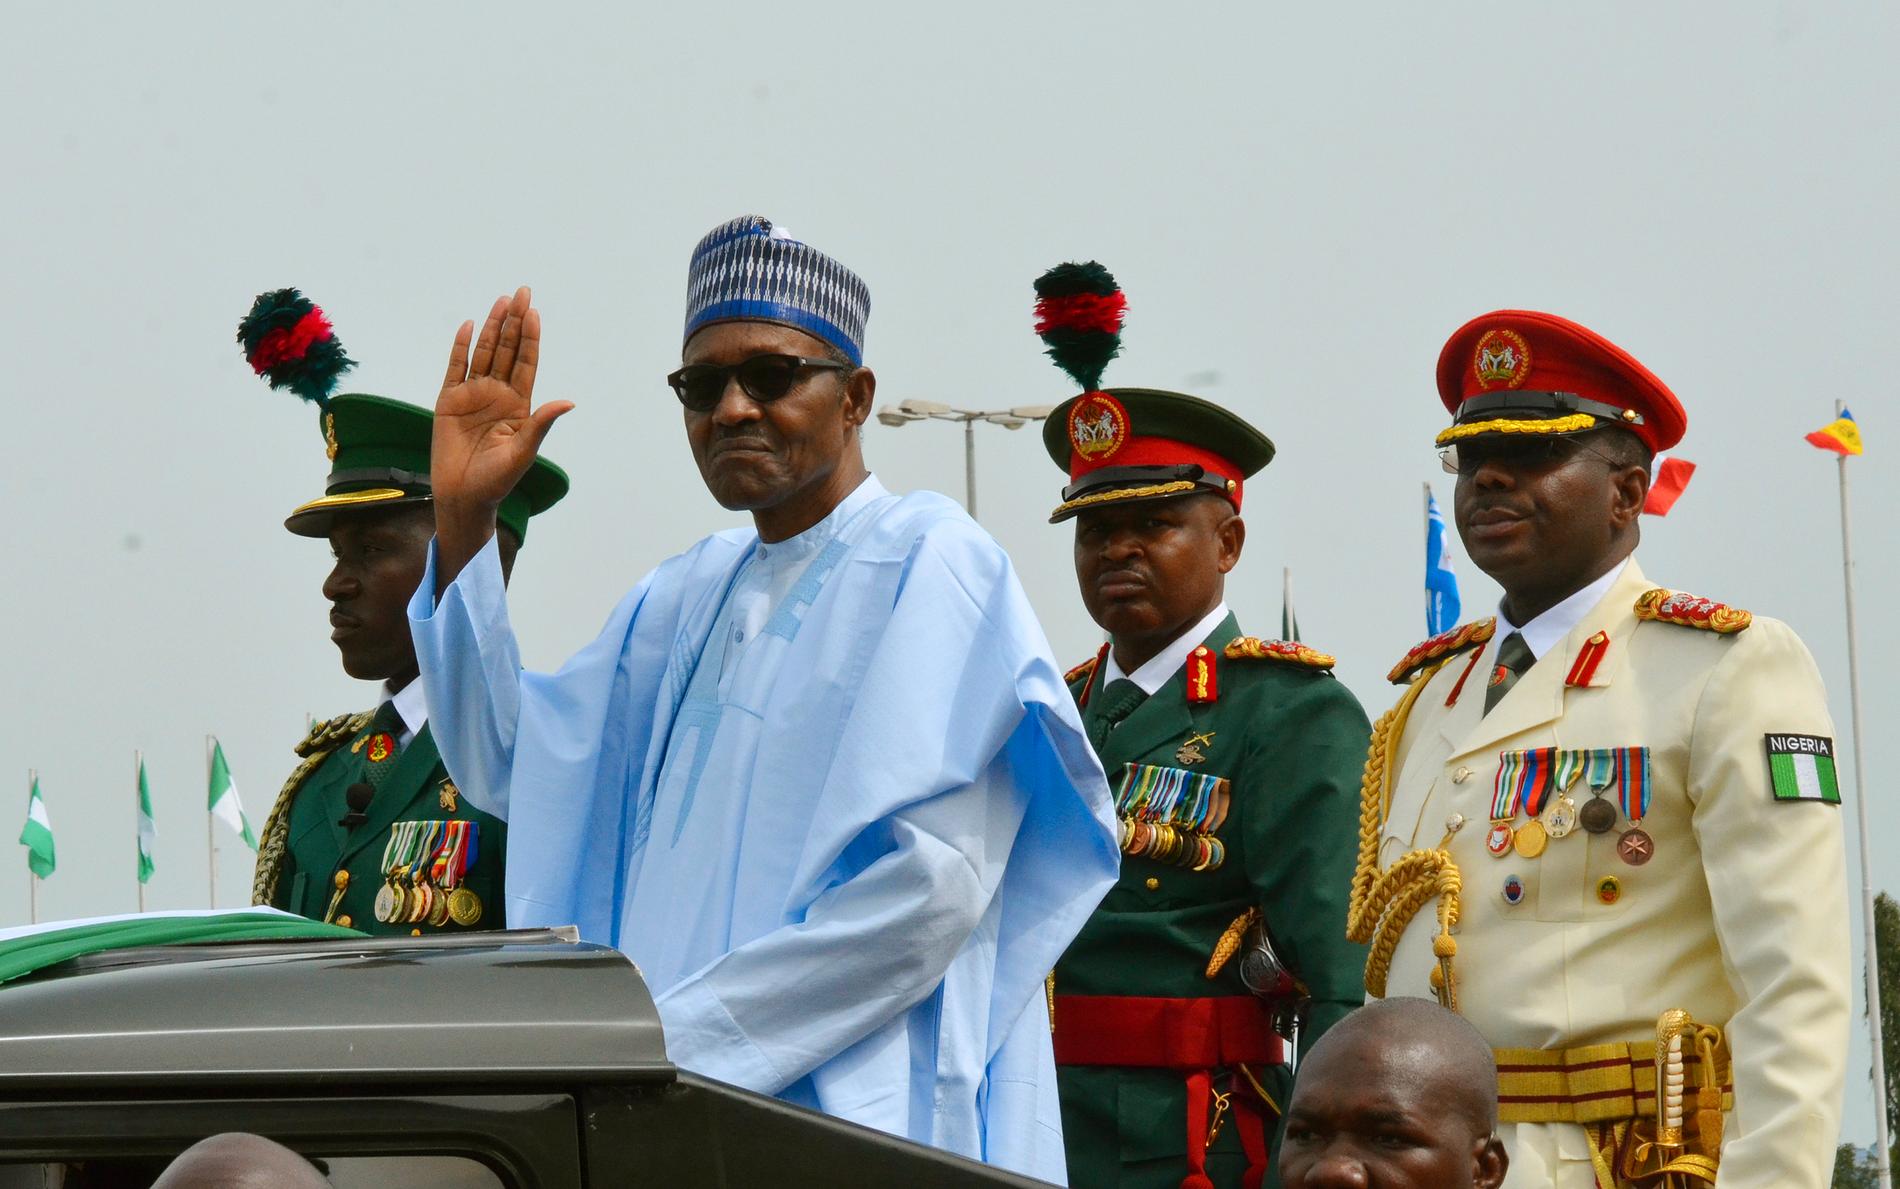 President Muhammadu Buhari vinkar till folkmassor under firandet av Nigerias självständighetsdag i oktober förra året. Arkivbild